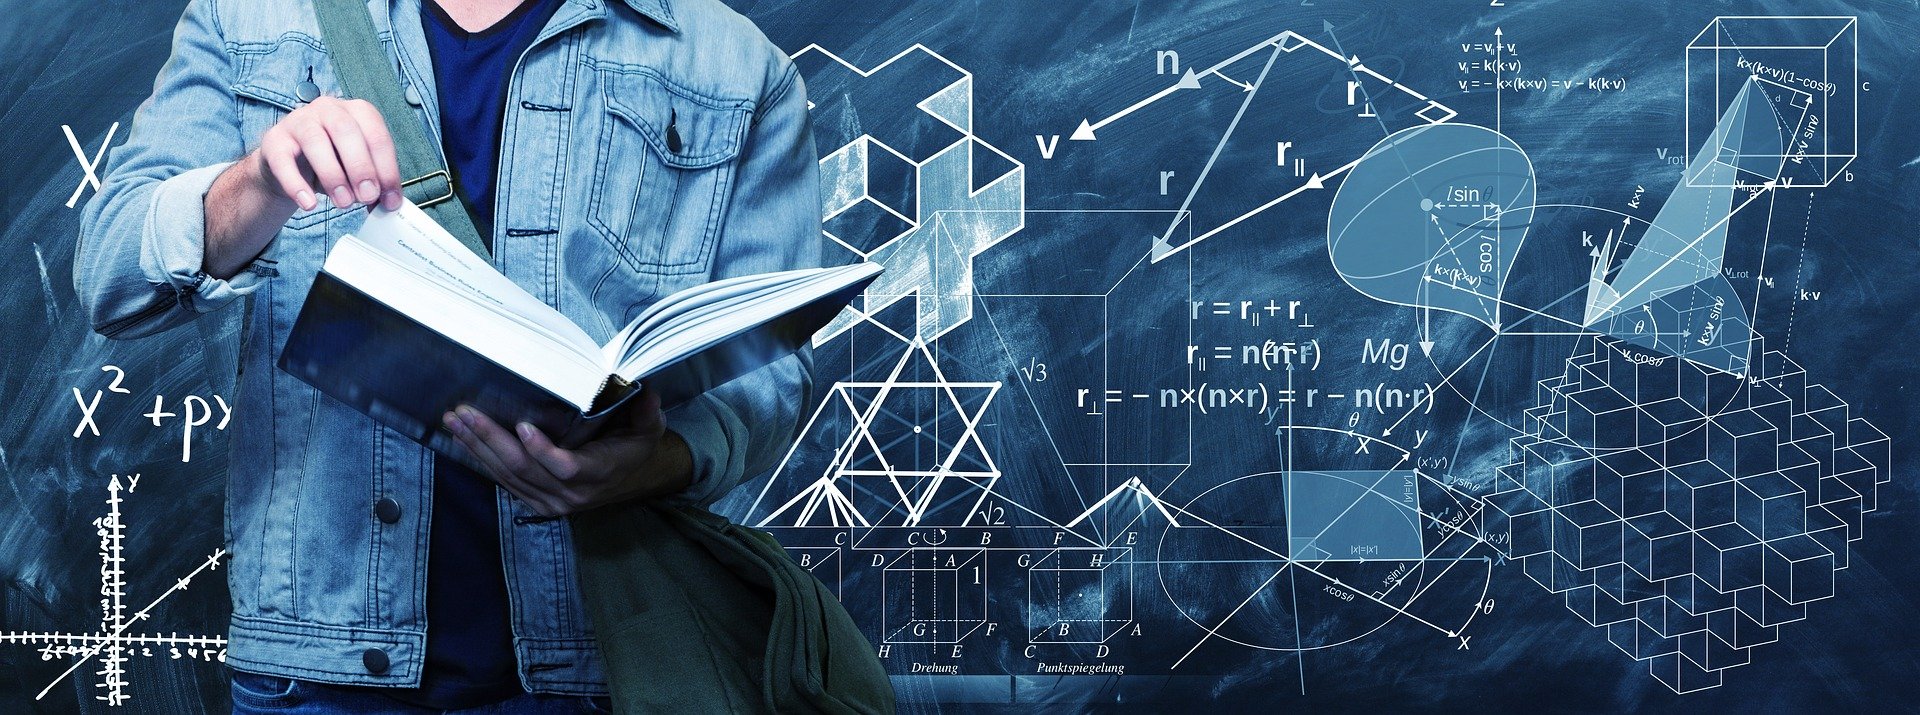 Изображение учителя, смотрящего на большую книгу на фоне математических символов.